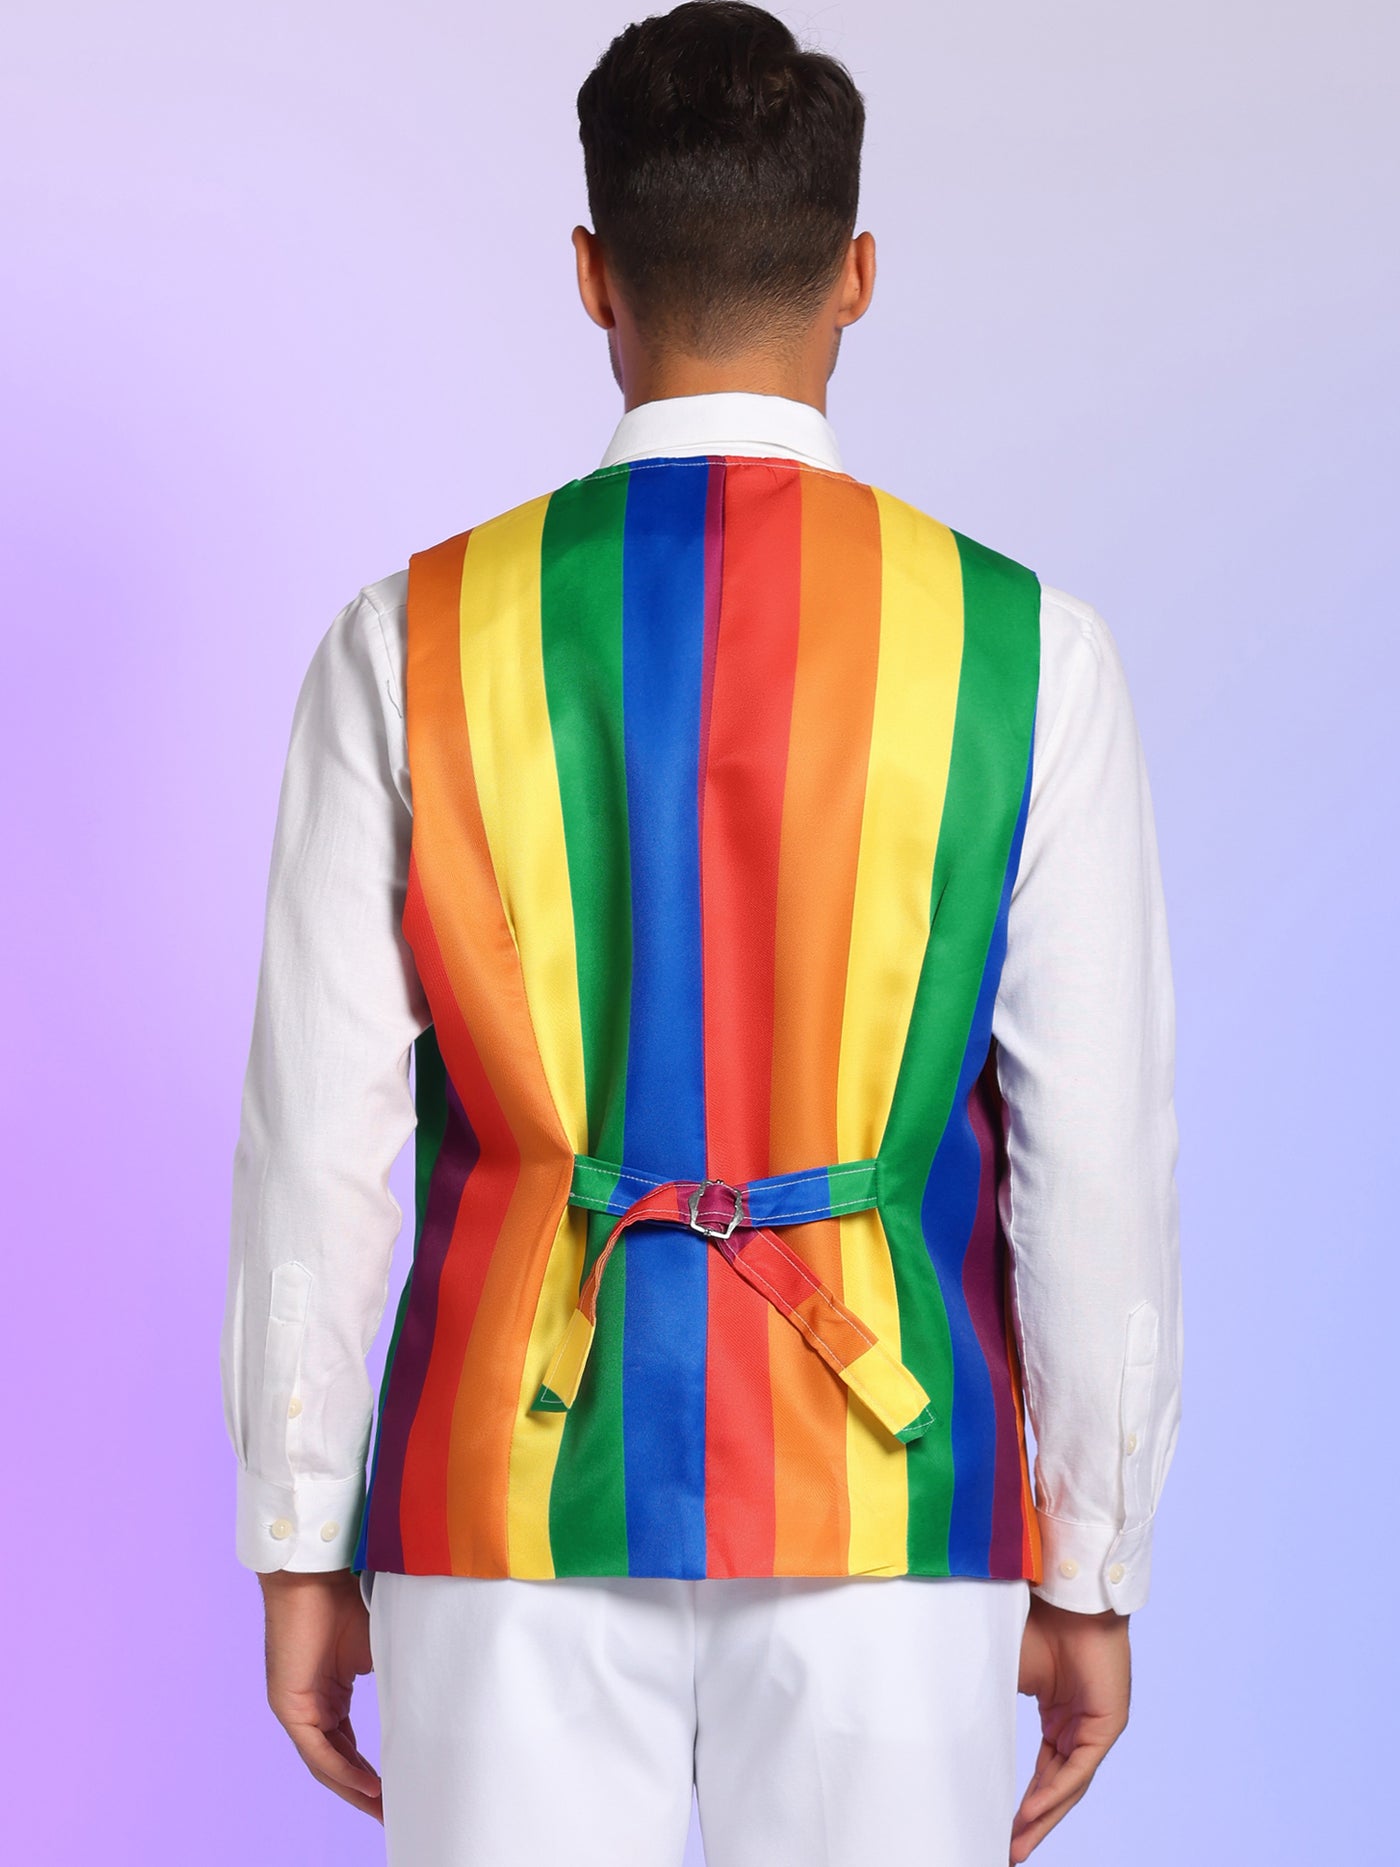 Bublédon Men's Rainbow Stripes Suit Vest Slim Fit Color Block Waistcoat